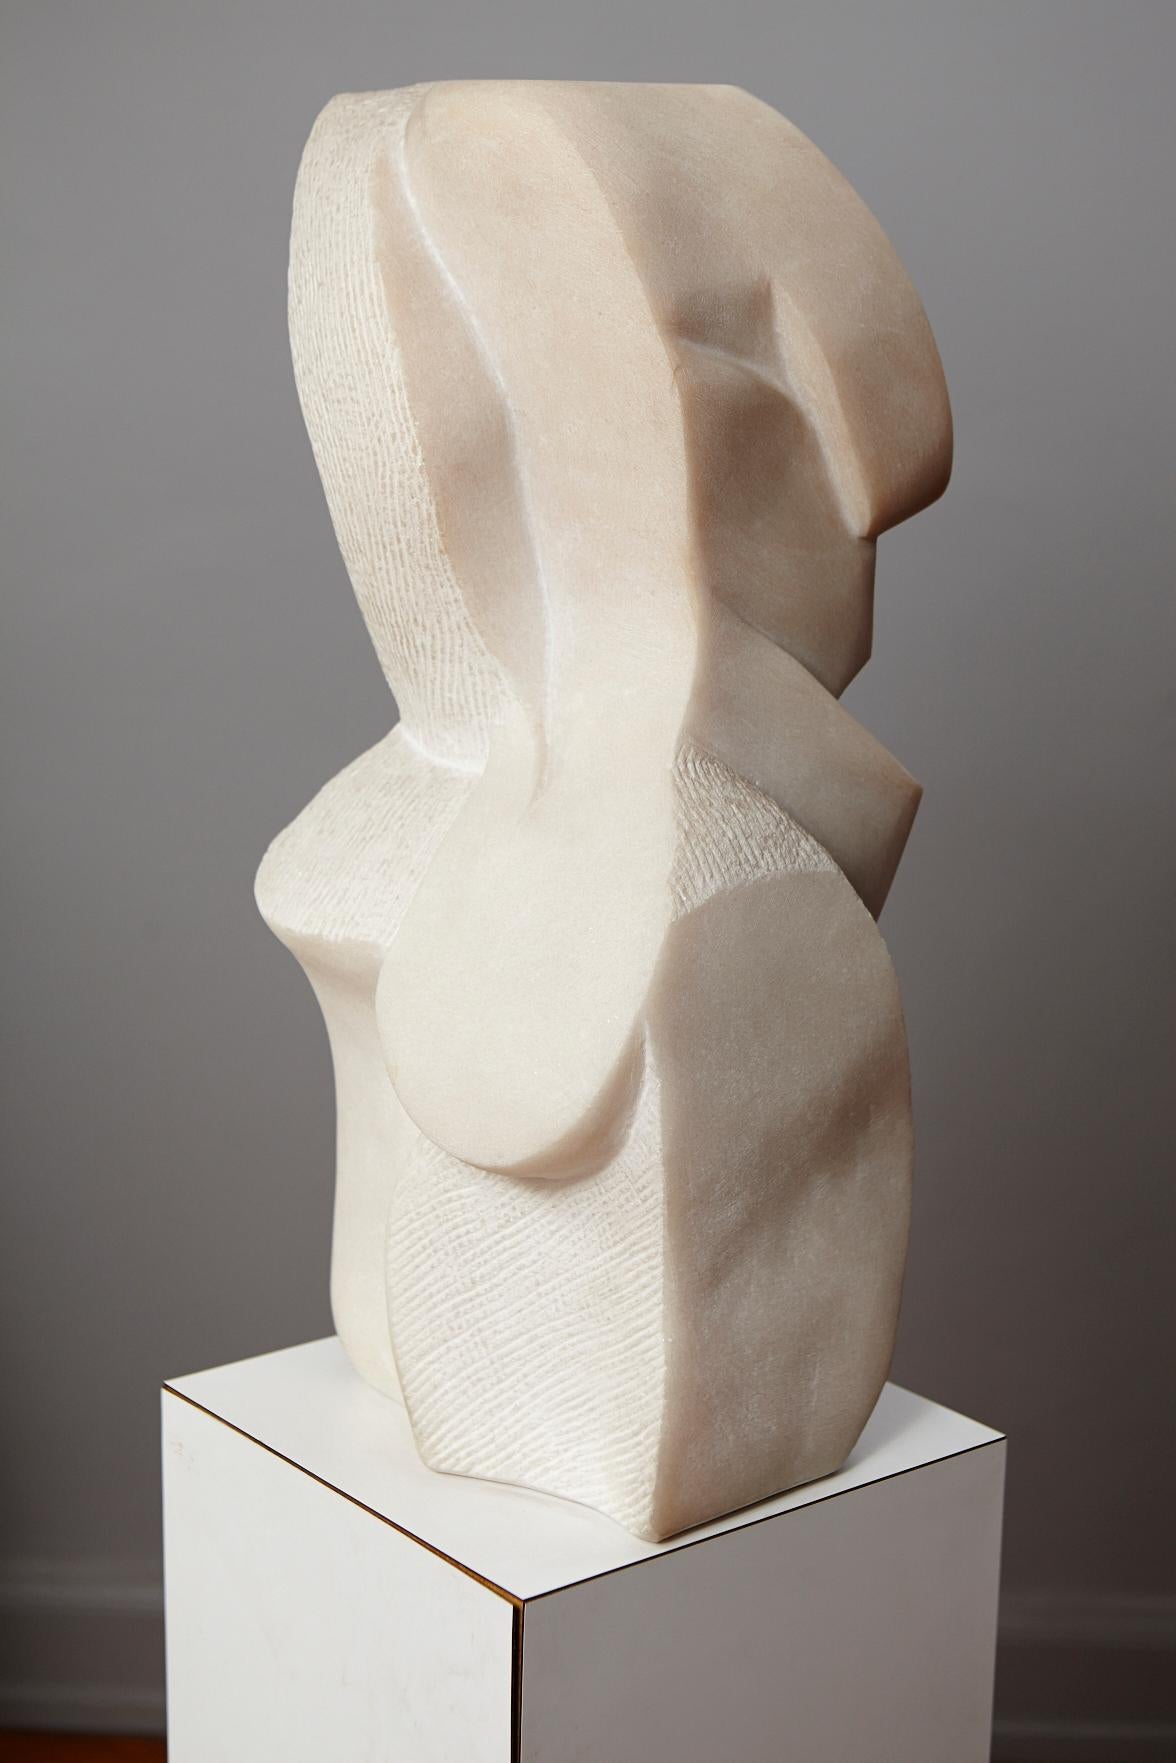 Artemis - Contemporary Sculpture by Dolores Singer